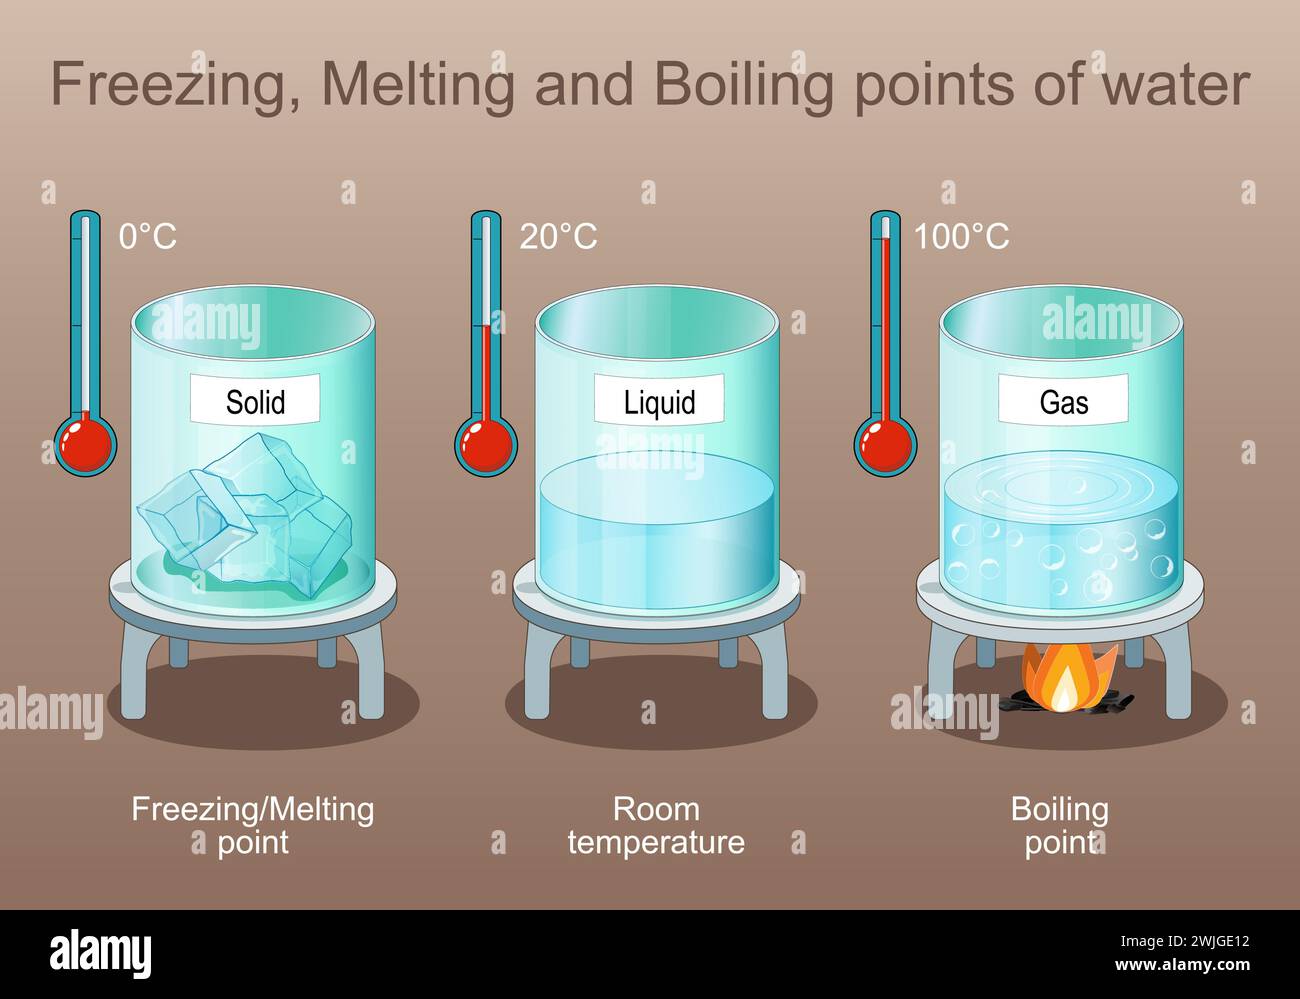 Punti di congelamento, fusione ed ebollizione dell'acqua. Stato della materia. Il vapore è gas dopo l'ebollizione, liquido e solido è ghiaccio. Poster per l'istruzione elementare Illustrazione Vettoriale